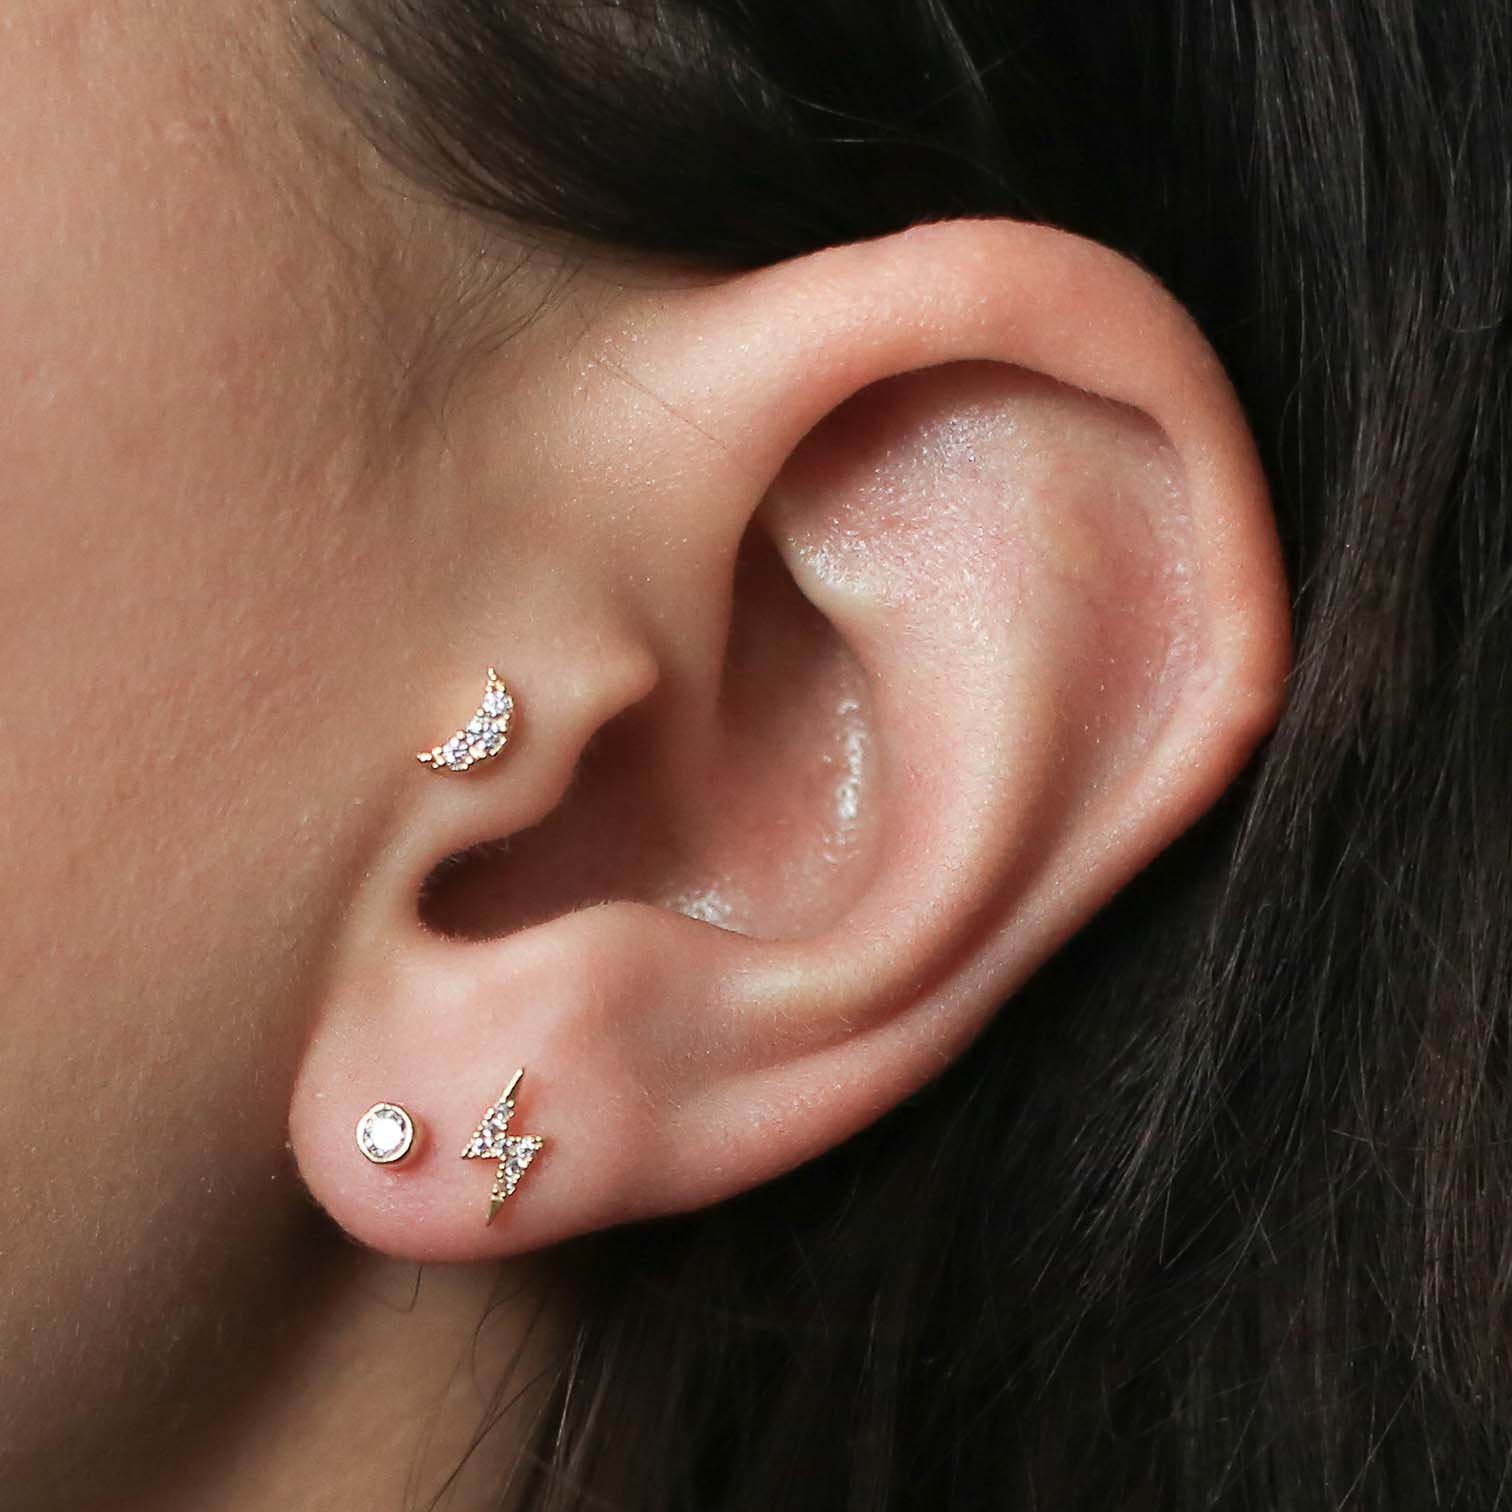 Flower Helix Piercing Earring Studs Tragus Cartilage Crystal Jewelry –  Impuria Ear Piercing Jewelry